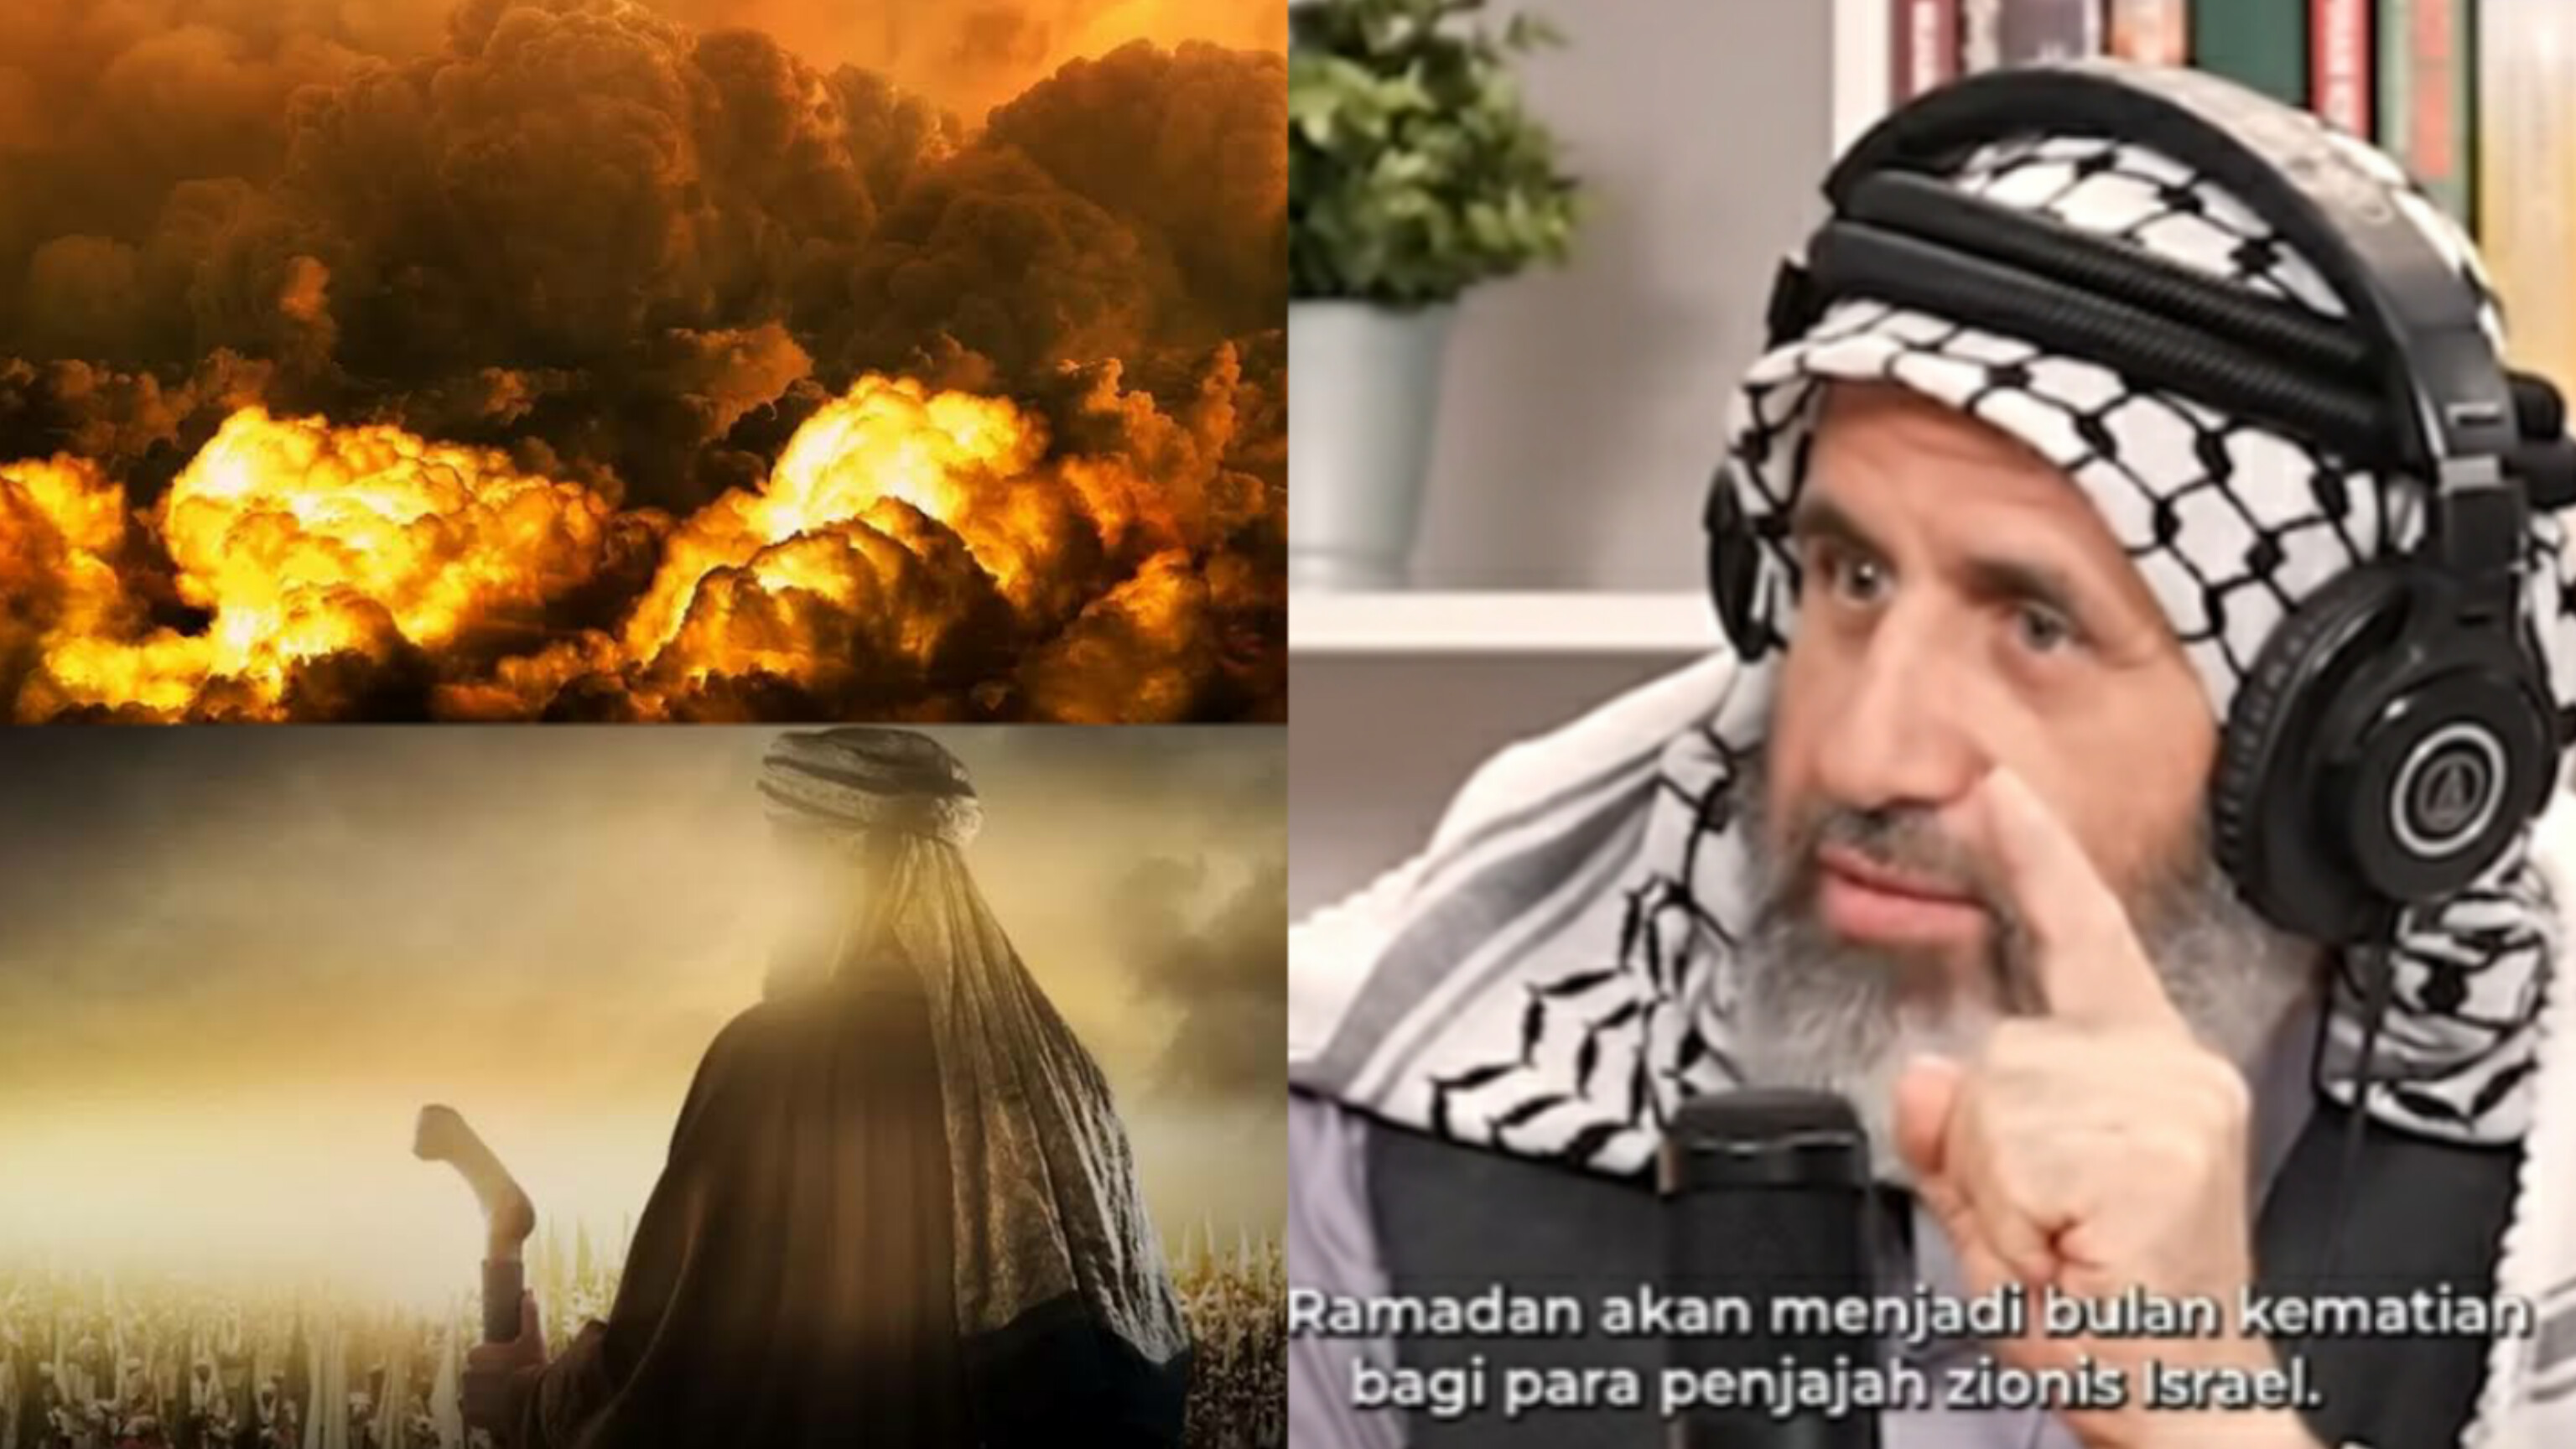 Ulama Palestina Makin Kuatkan Tanda Kemunculan Imam Mahdi, Akan Ada Peristiwa Bersejarah Bagi Umat Islam?